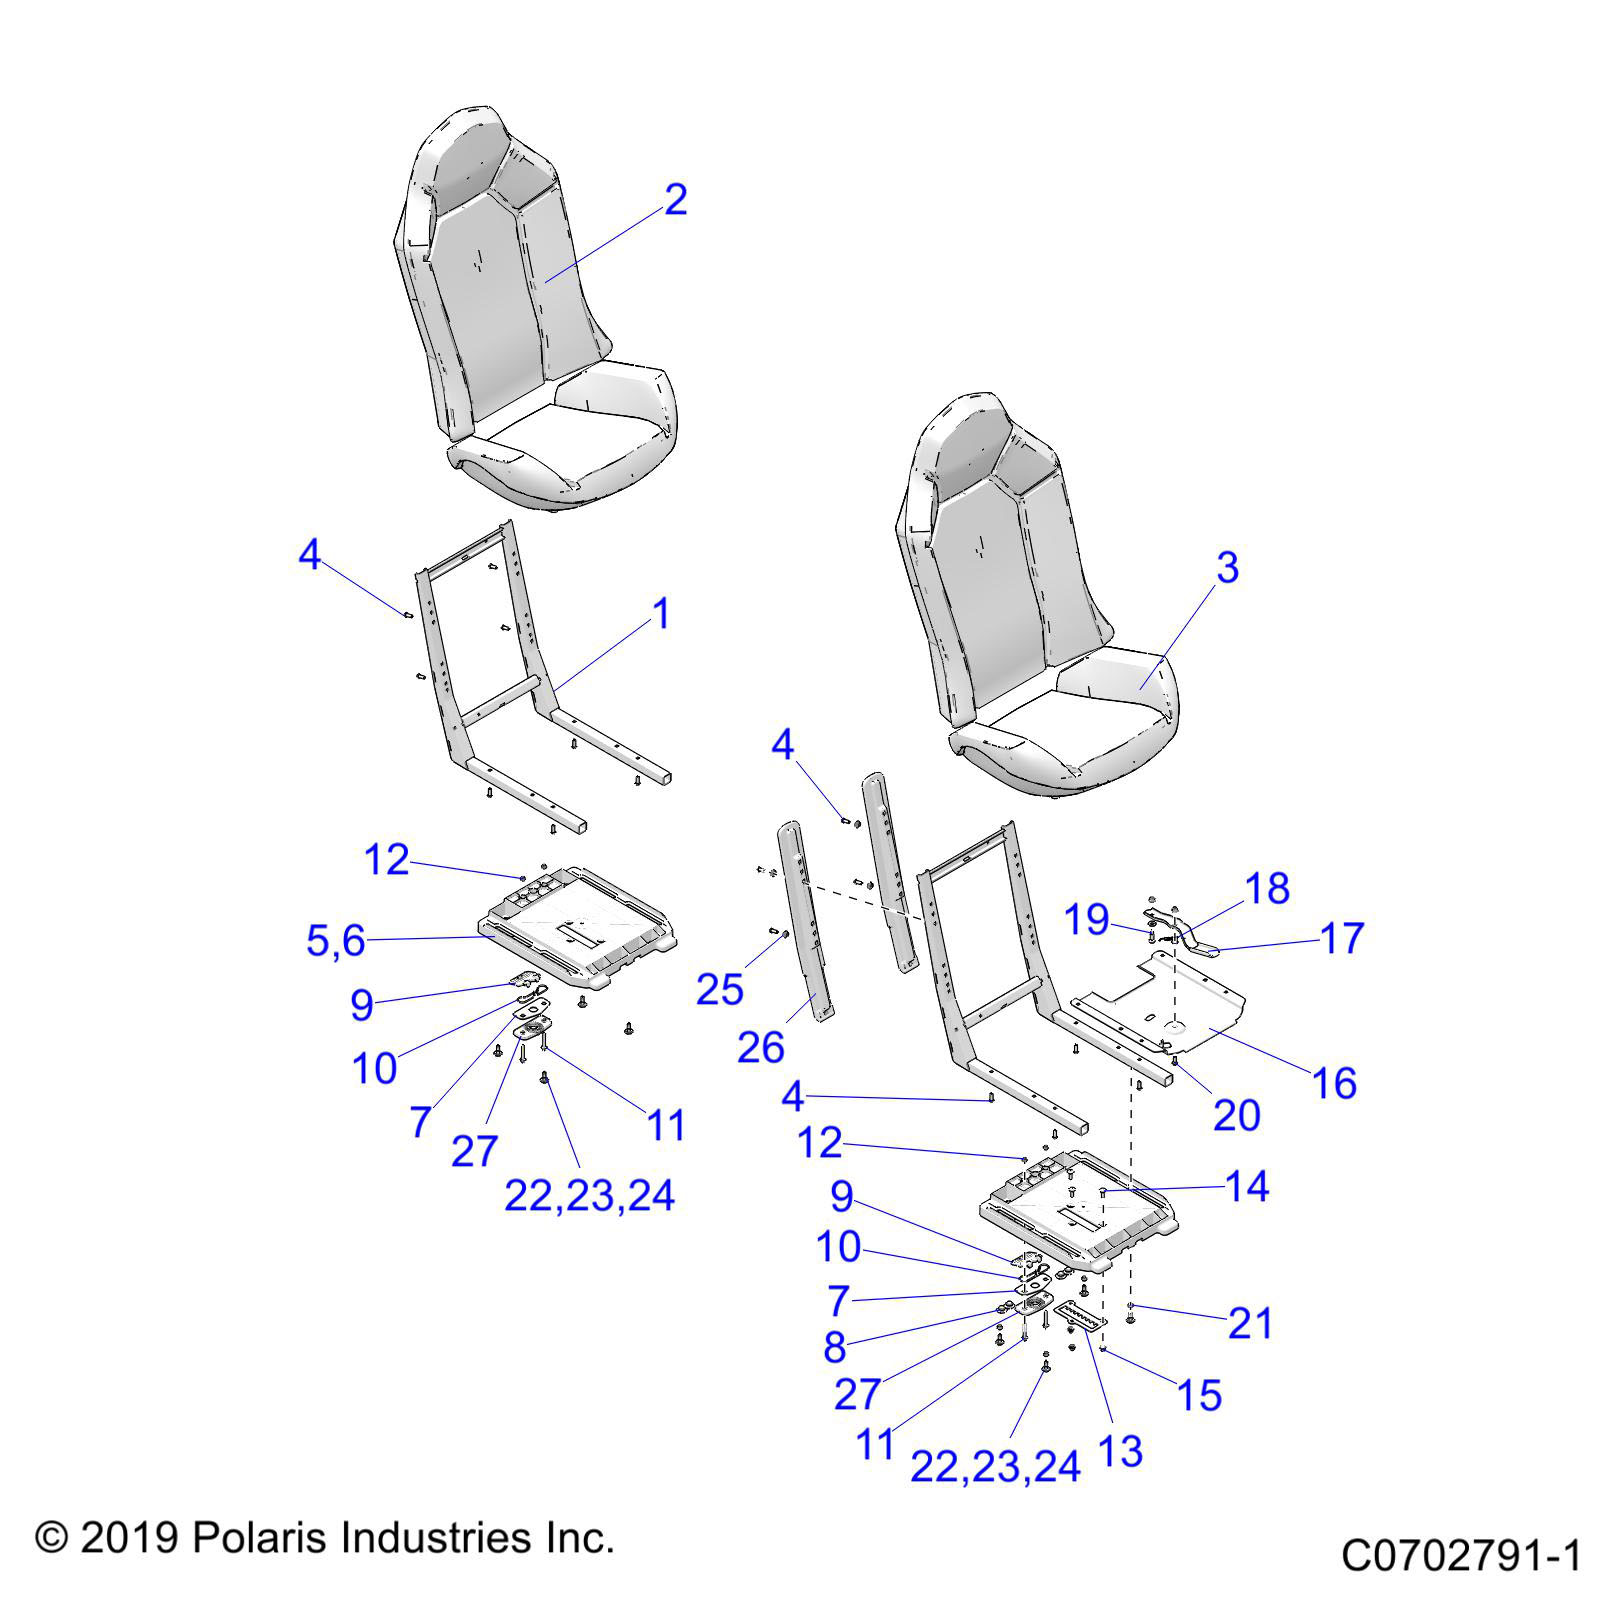 Part Number : 5260733 SLIDER LEVER SEAT BRACKET